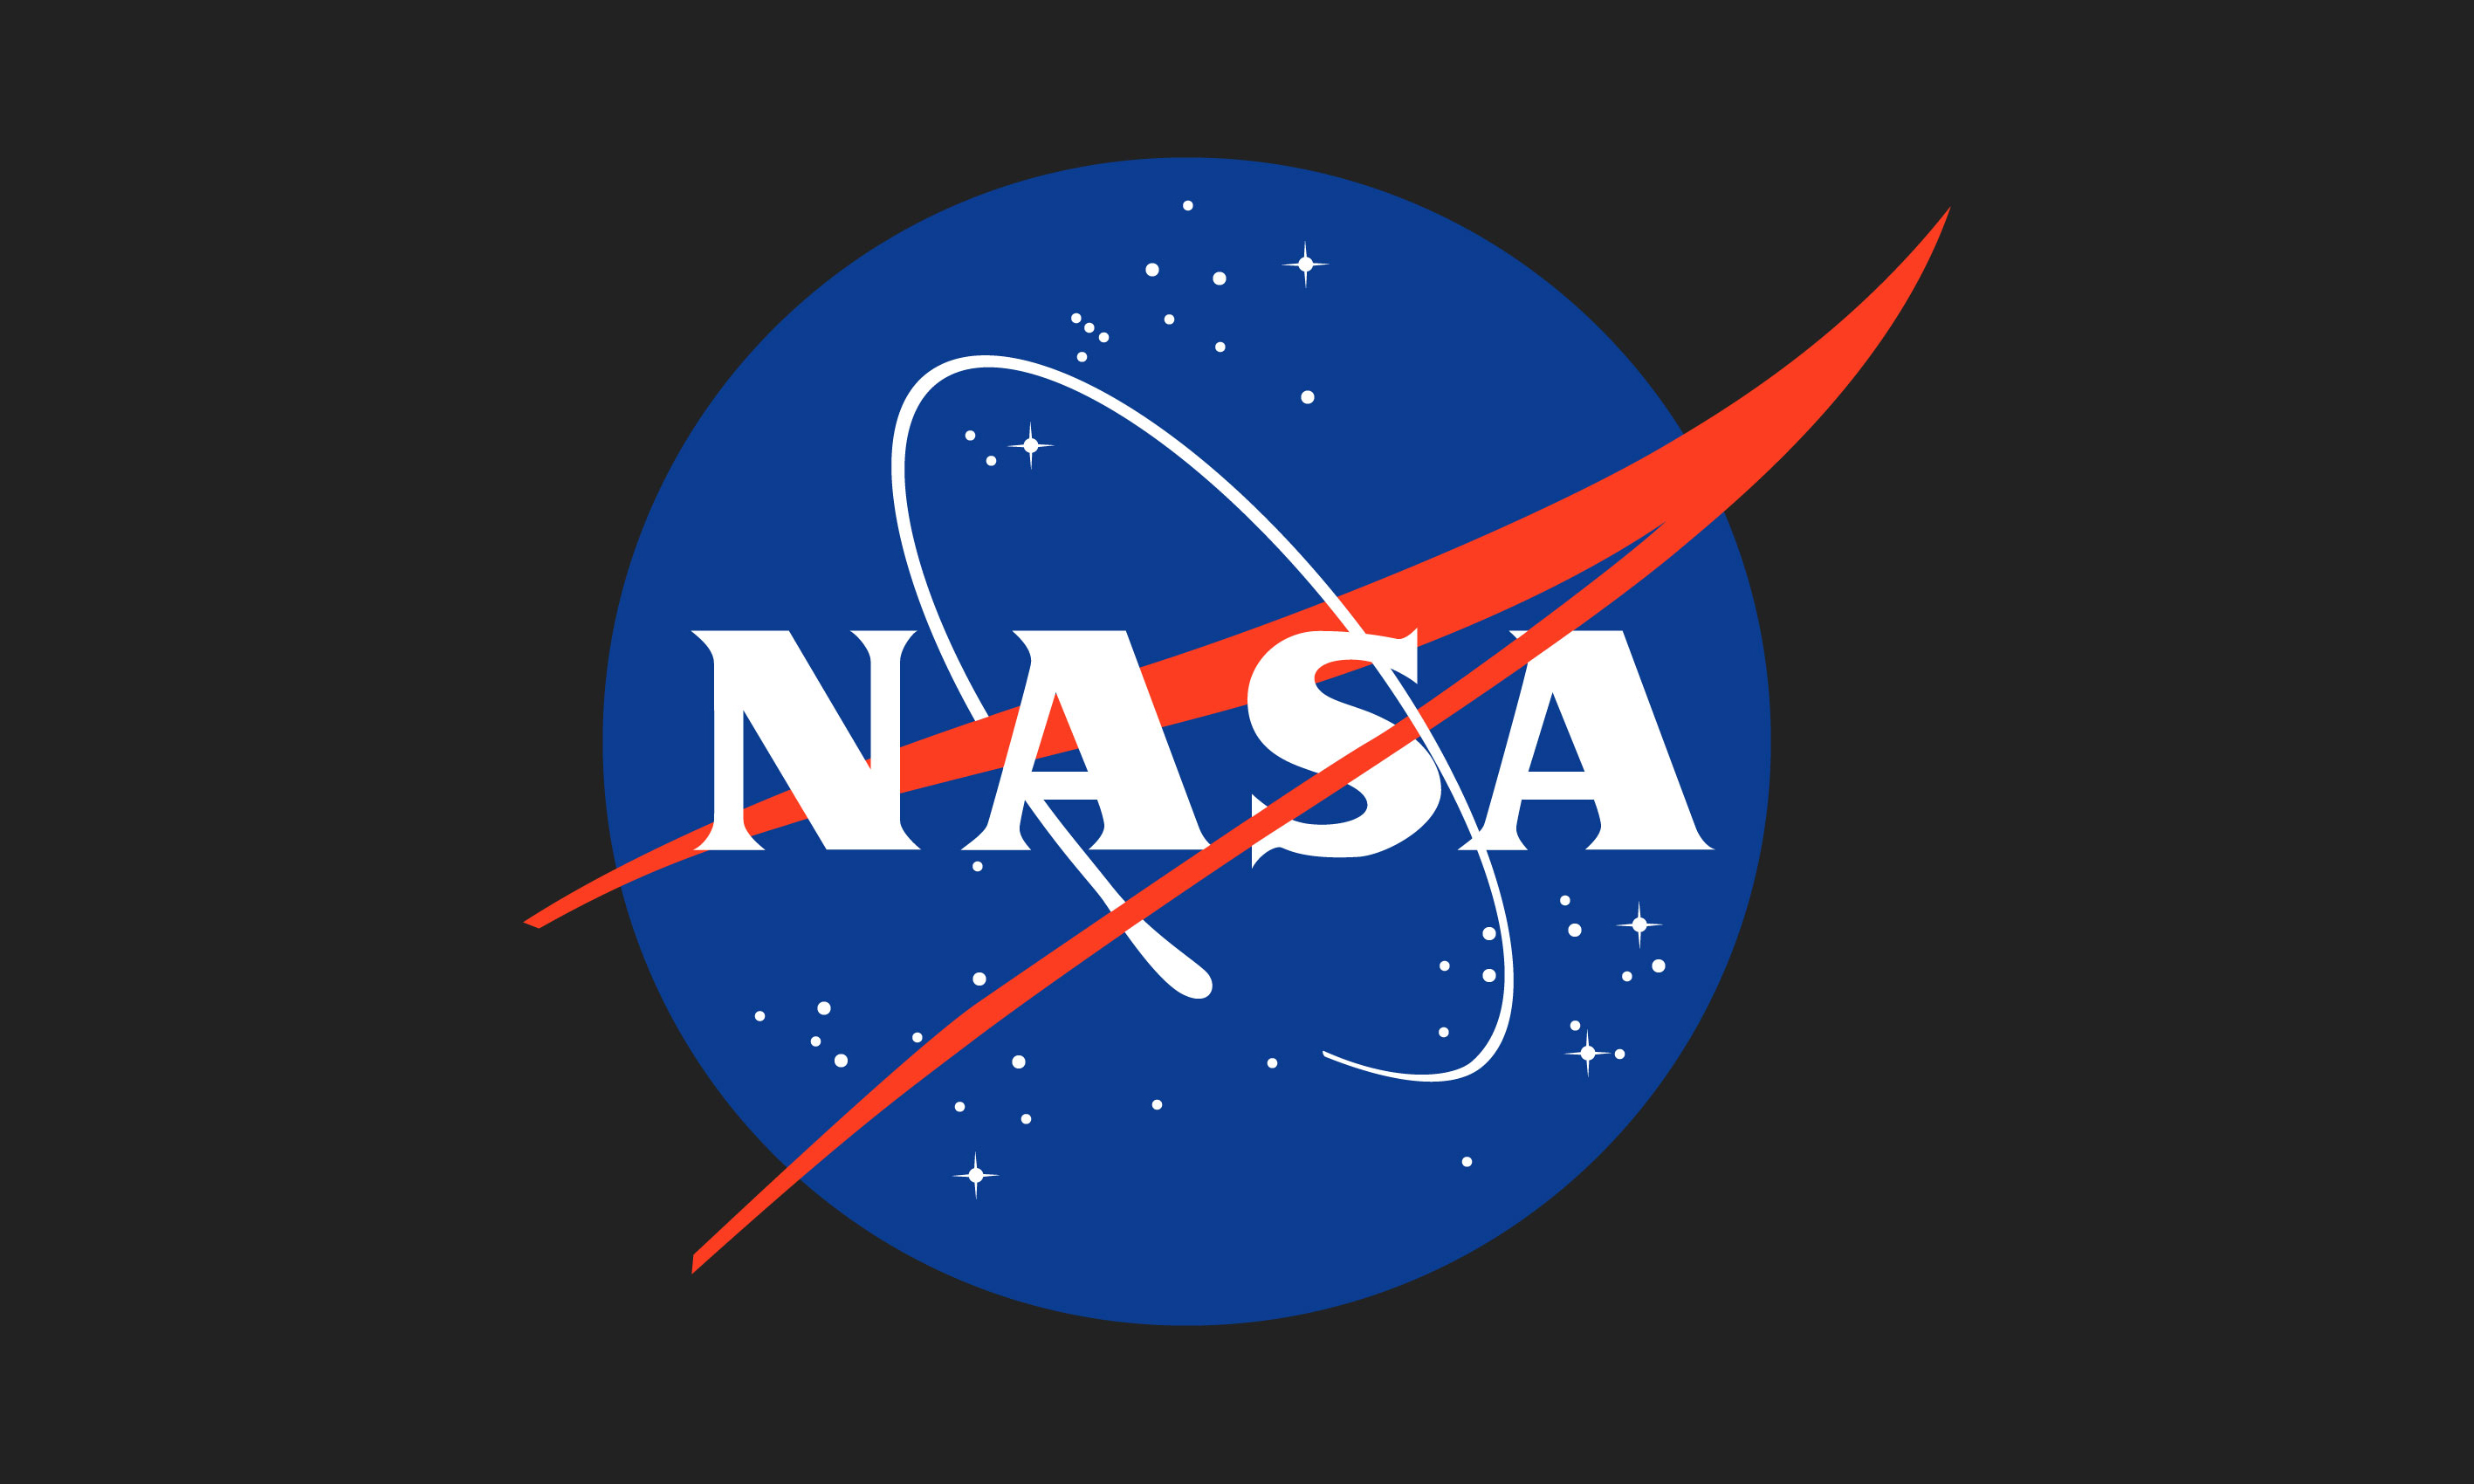 NASA space 高清壁纸38 - 1680x1050 壁纸下载 - NASA space 高清壁纸 - 其它壁纸 - V3壁纸站